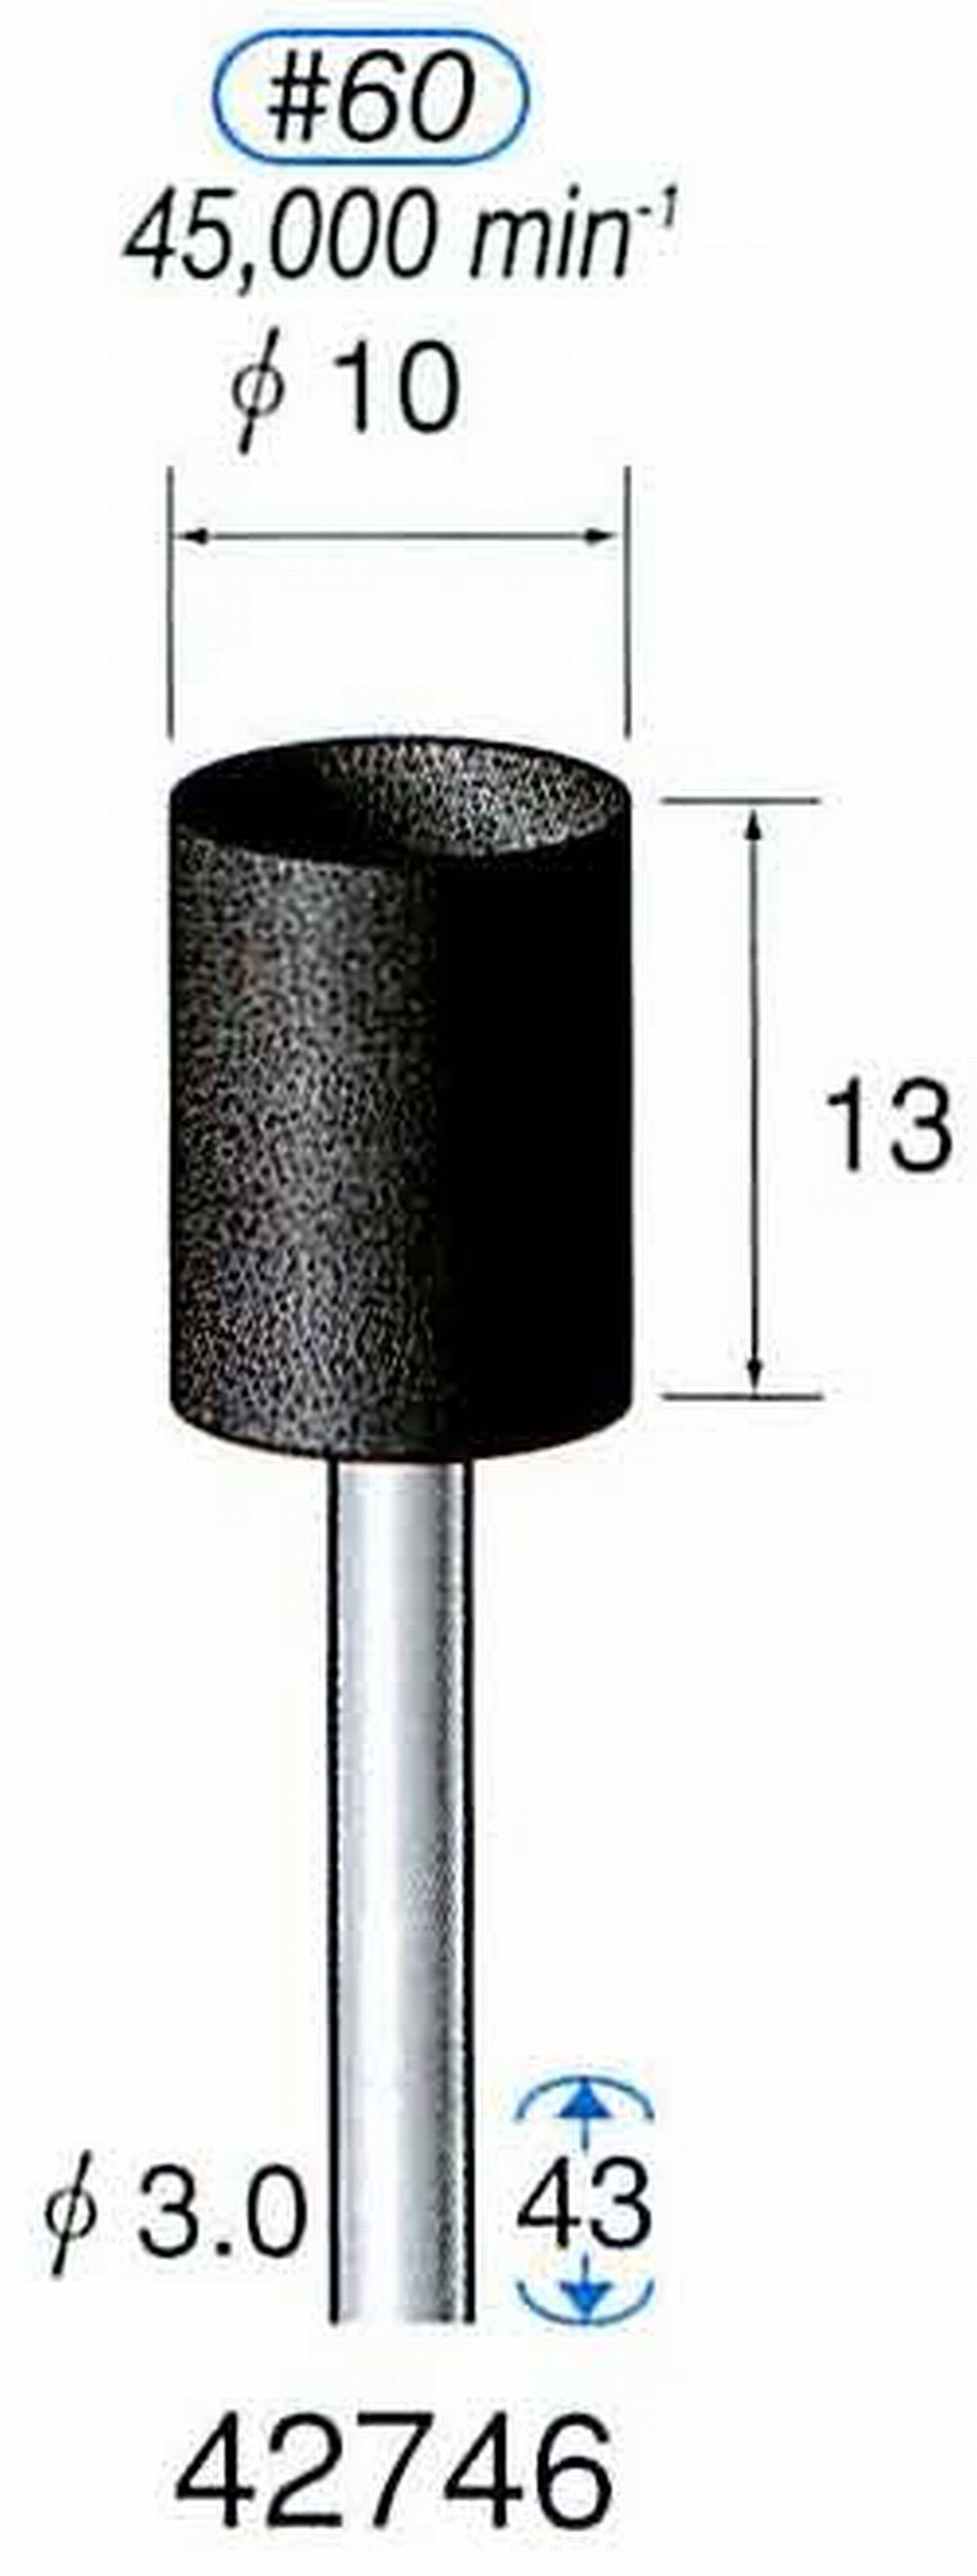 ナカニシ/NAKANISHI 軸付砥石(A砥粒) ブラック砥石 軸径(シャンク) φ3.0mm 42746